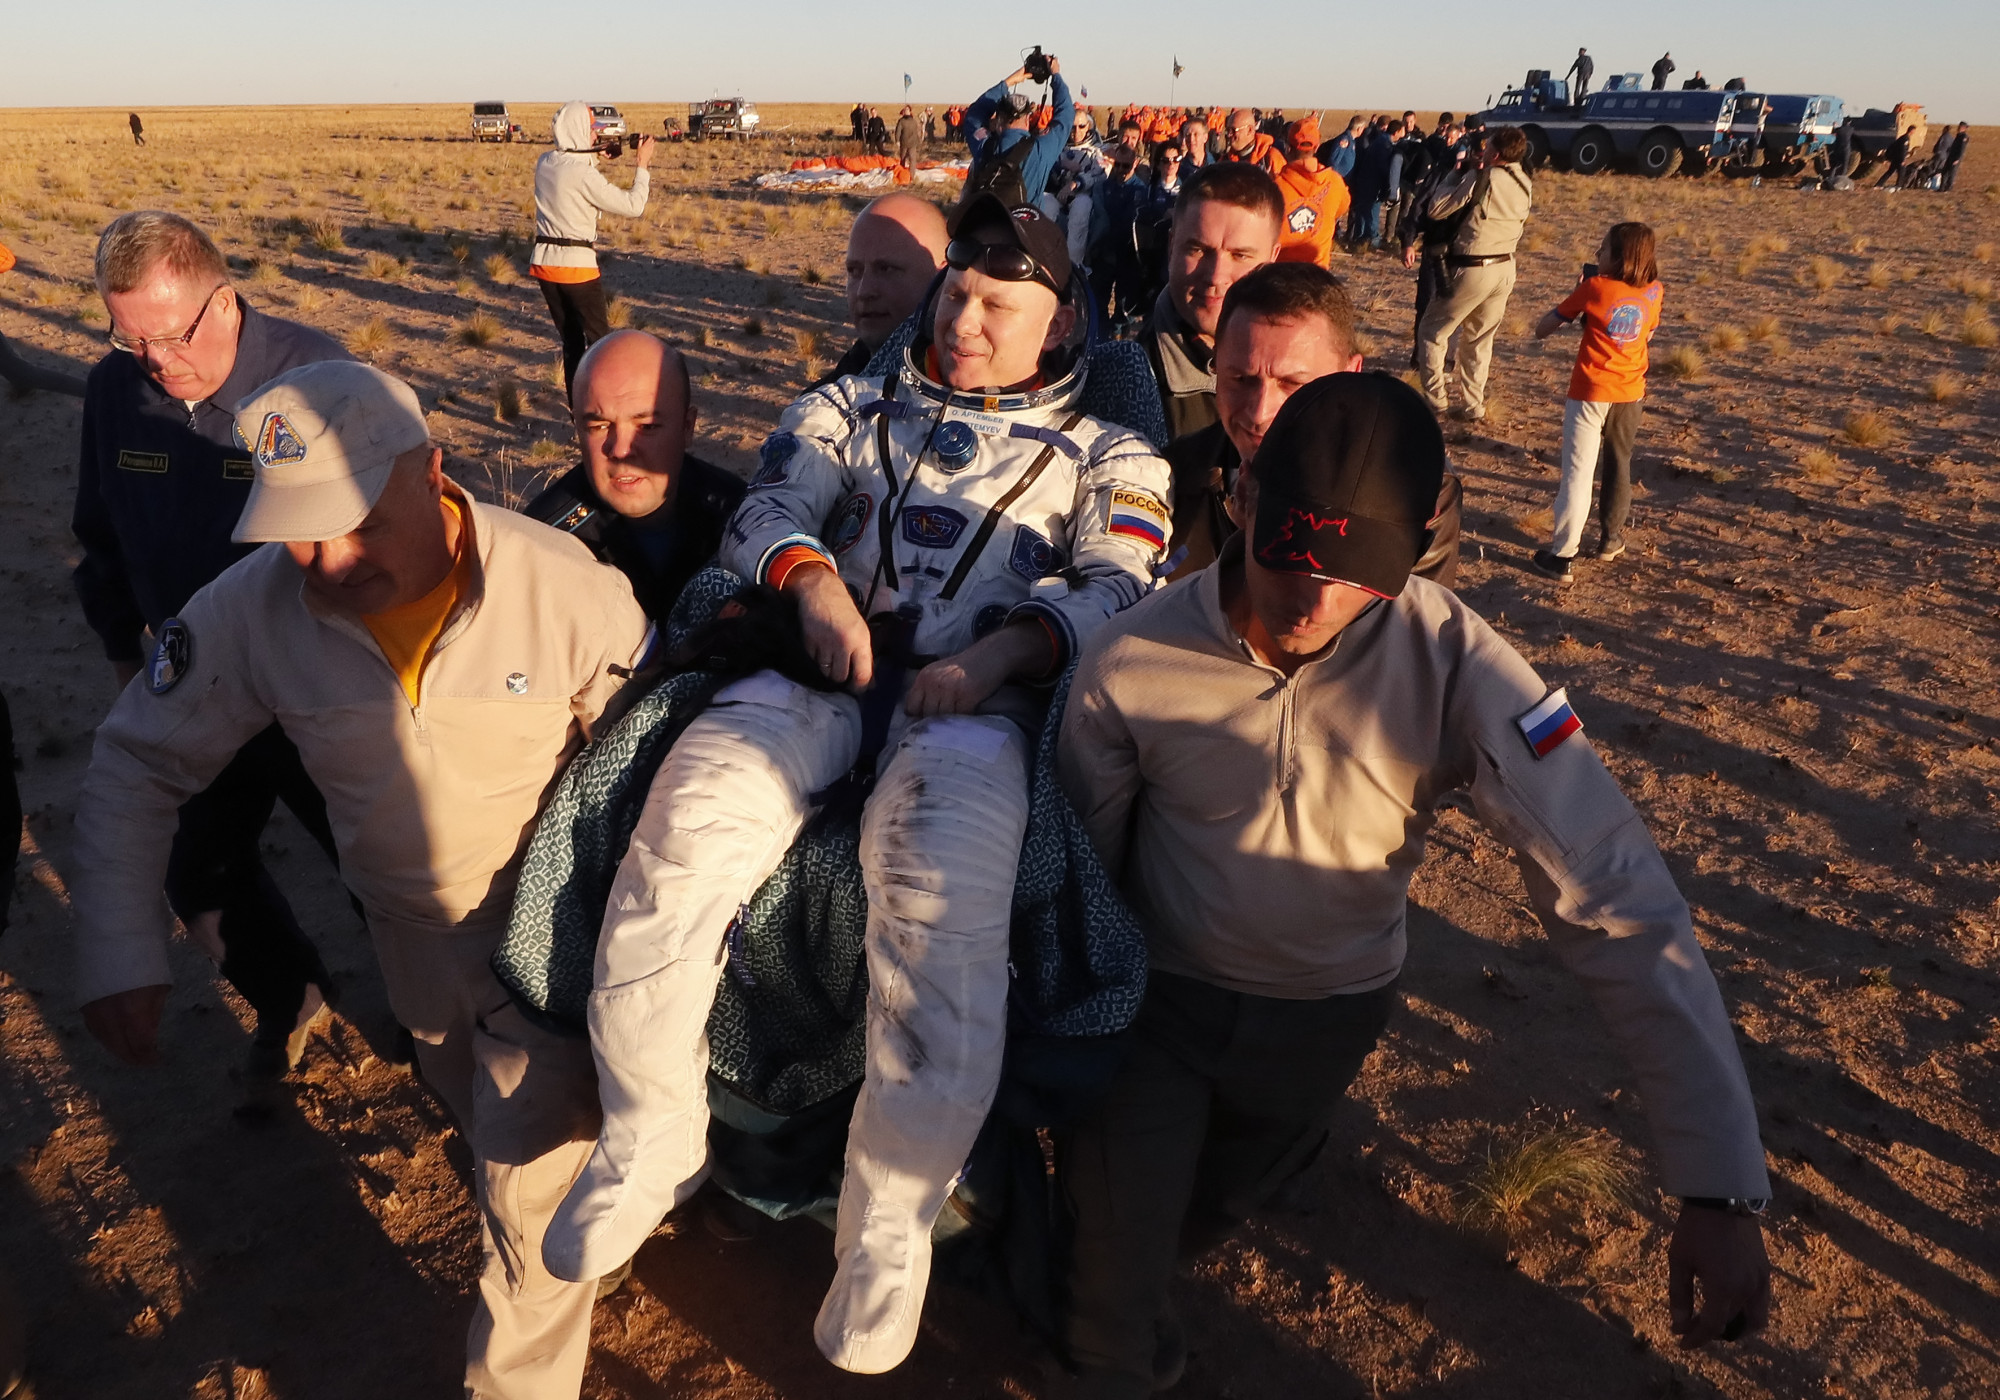 Hazatért az űrből, majd pár nap múlva autóval elütötte kollégáját az orosz űrhajós